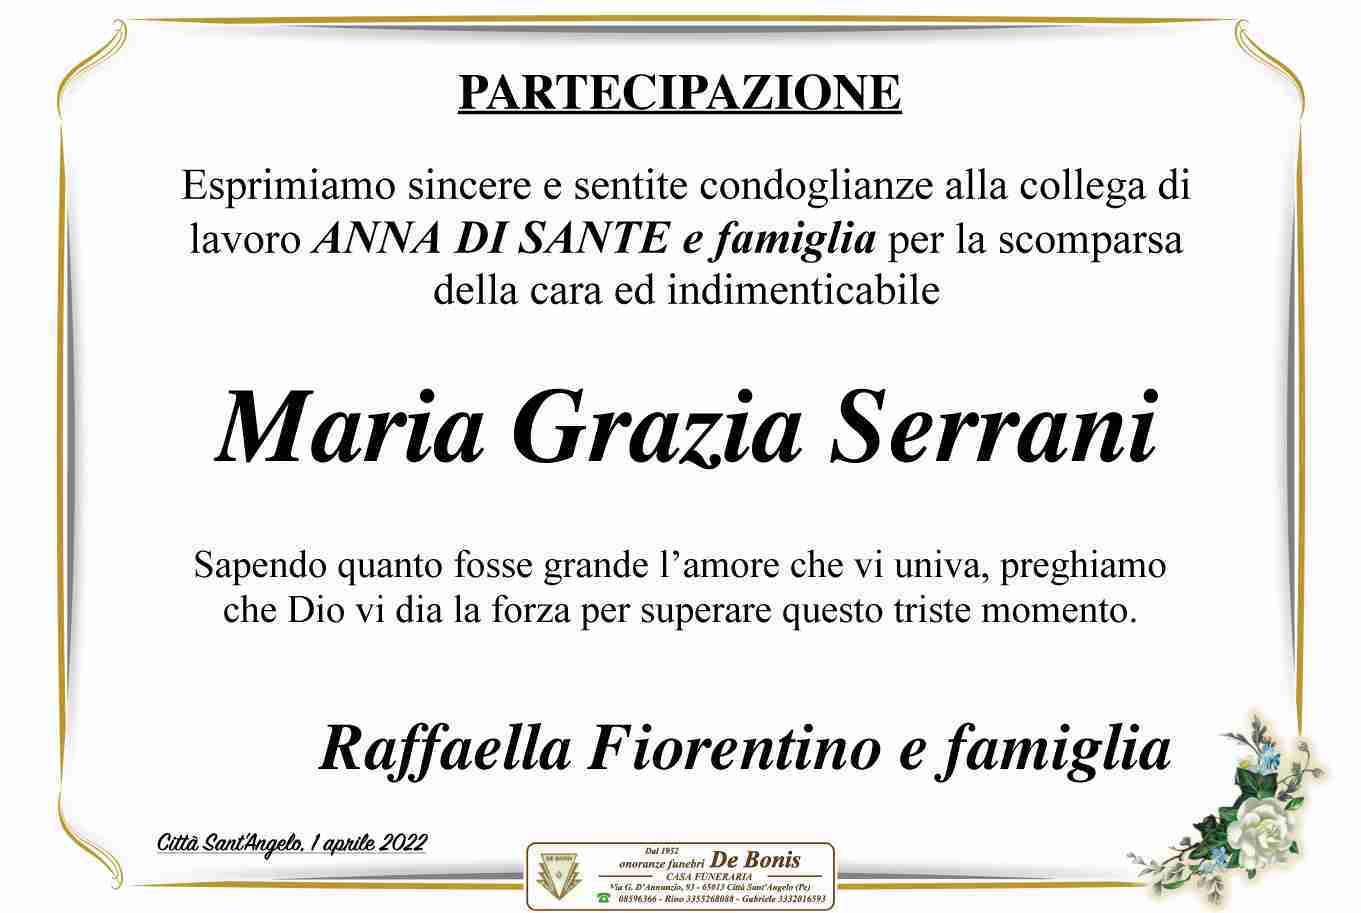 Maria Grazia Serrani